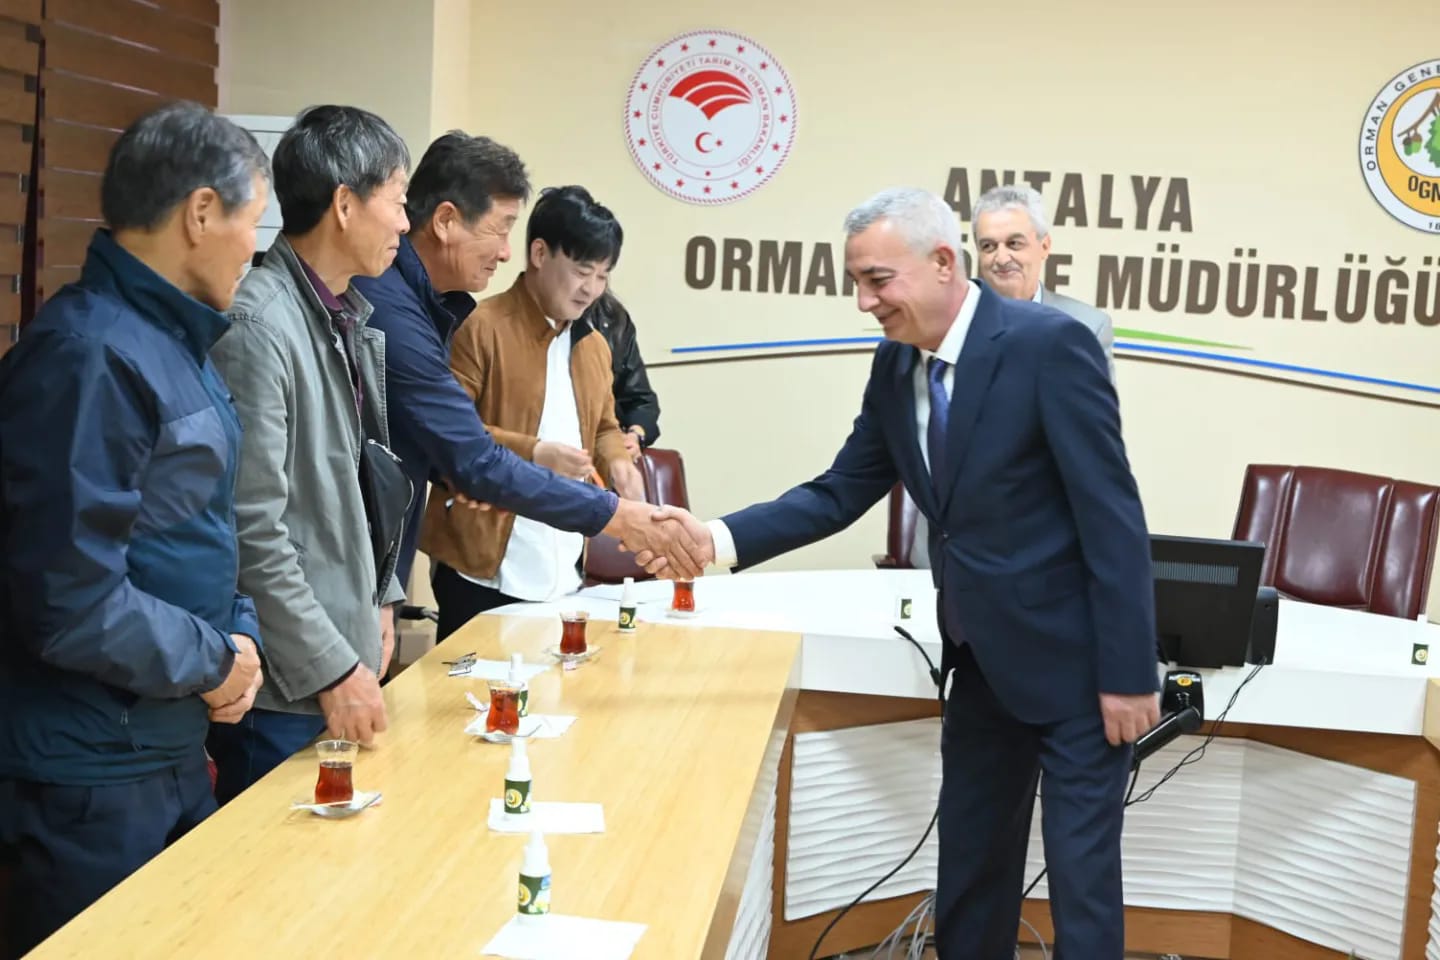 Güney Koreli heyet, Antalya Orman Bölge Müdürlüğü'nü ziyaret etti: Bilgi alışverişi ve iş birliği masaya yatırıldı.